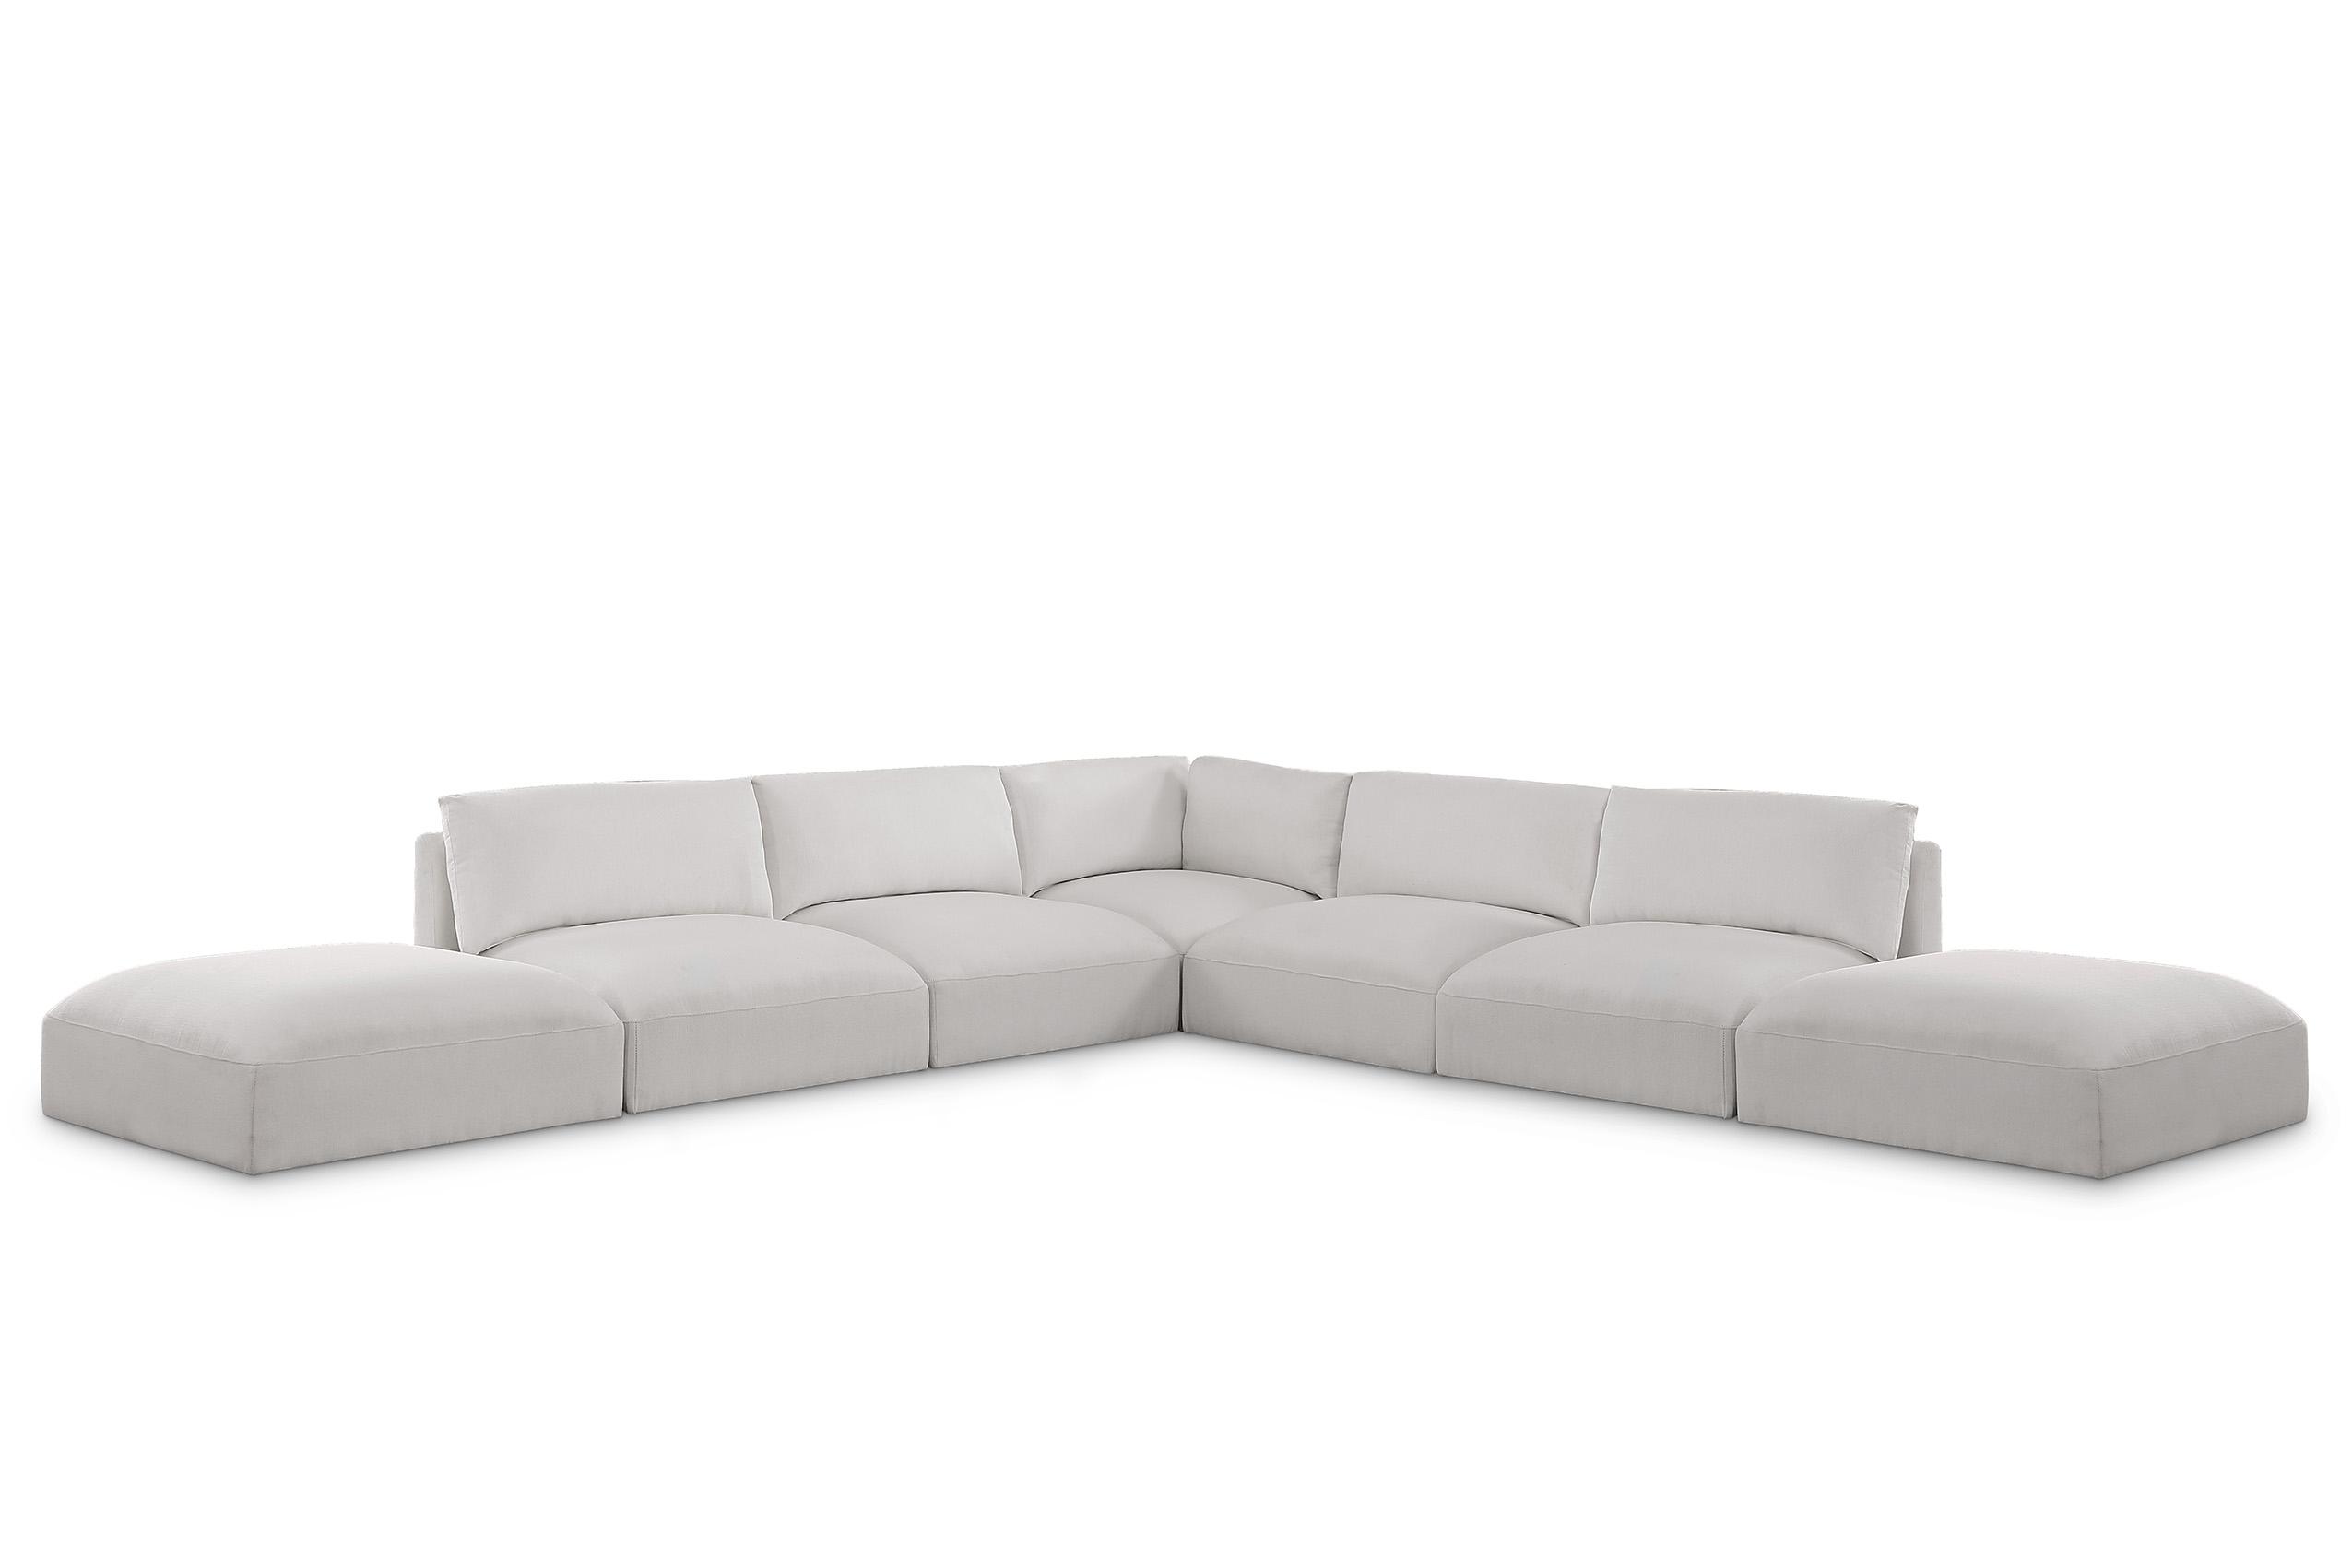 Contemporary, Modern Modular Sectional Sofa EASE 696Cream-Sec7C 696Cream-Sec7C in Cream Fabric